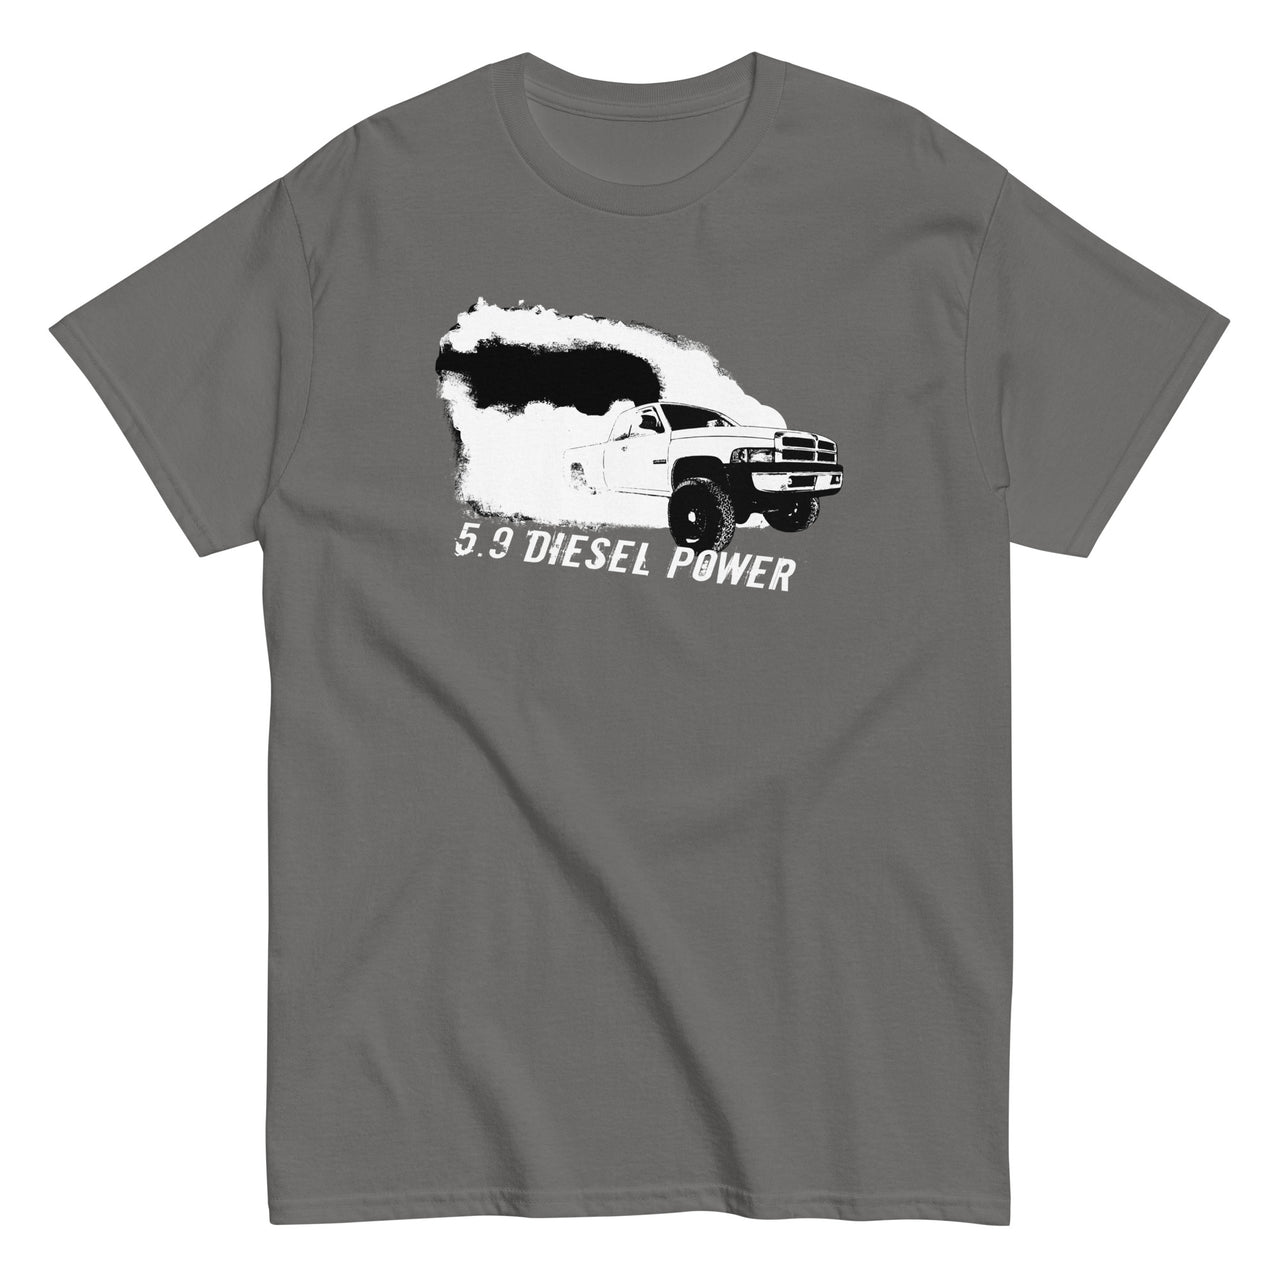 2nd Gen 5.9 Diesel Burnout Rolling Coal T-Shirt in grey